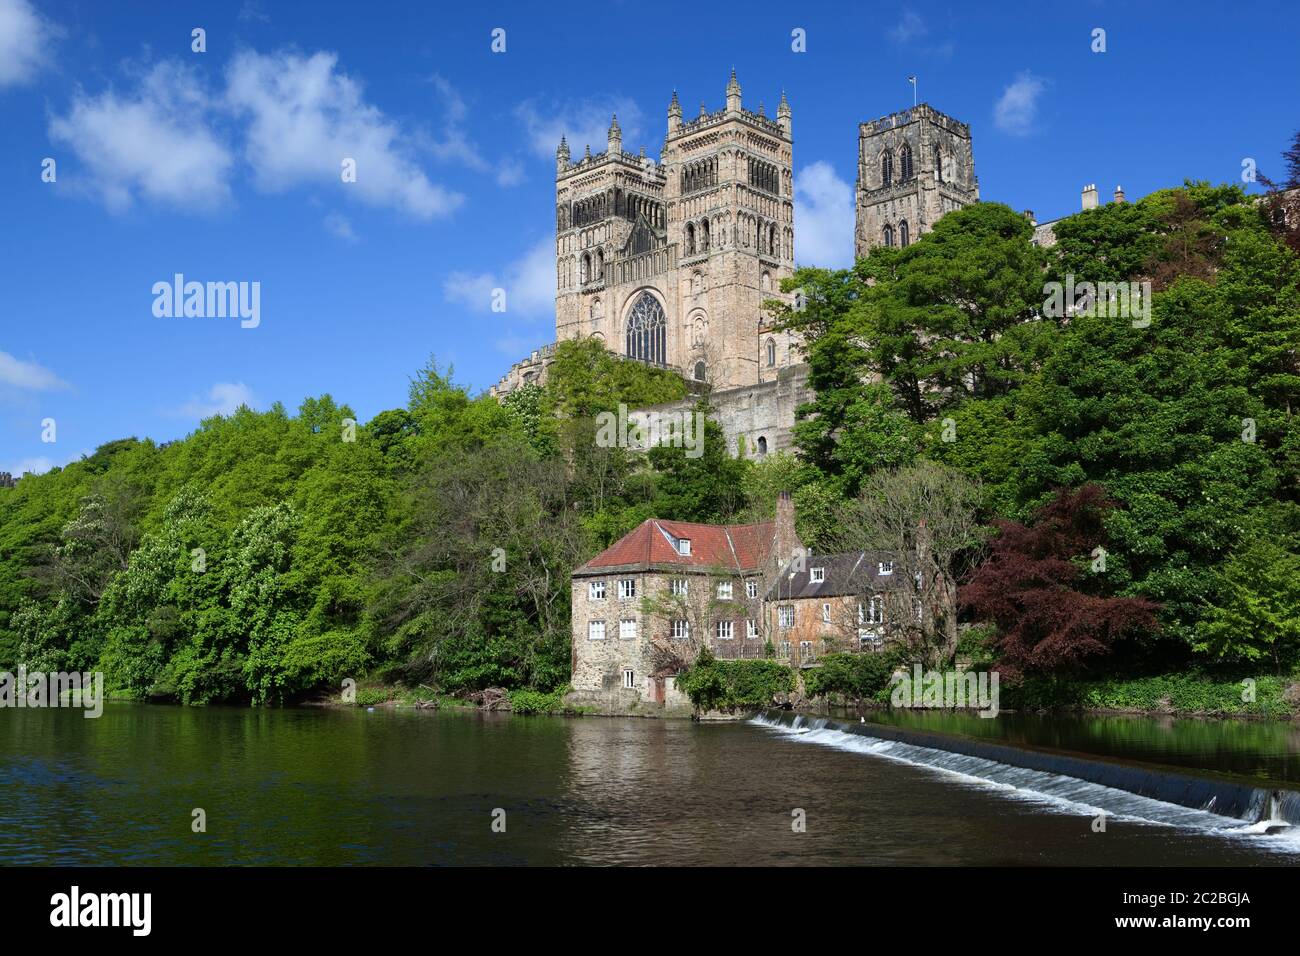 Cathédrale de Durham et Old Fulling Mill et musée d'archéologie sur le River Wear, Durham, comté de Durham, Angleterre, Royaume-Uni, Europe Banque D'Images